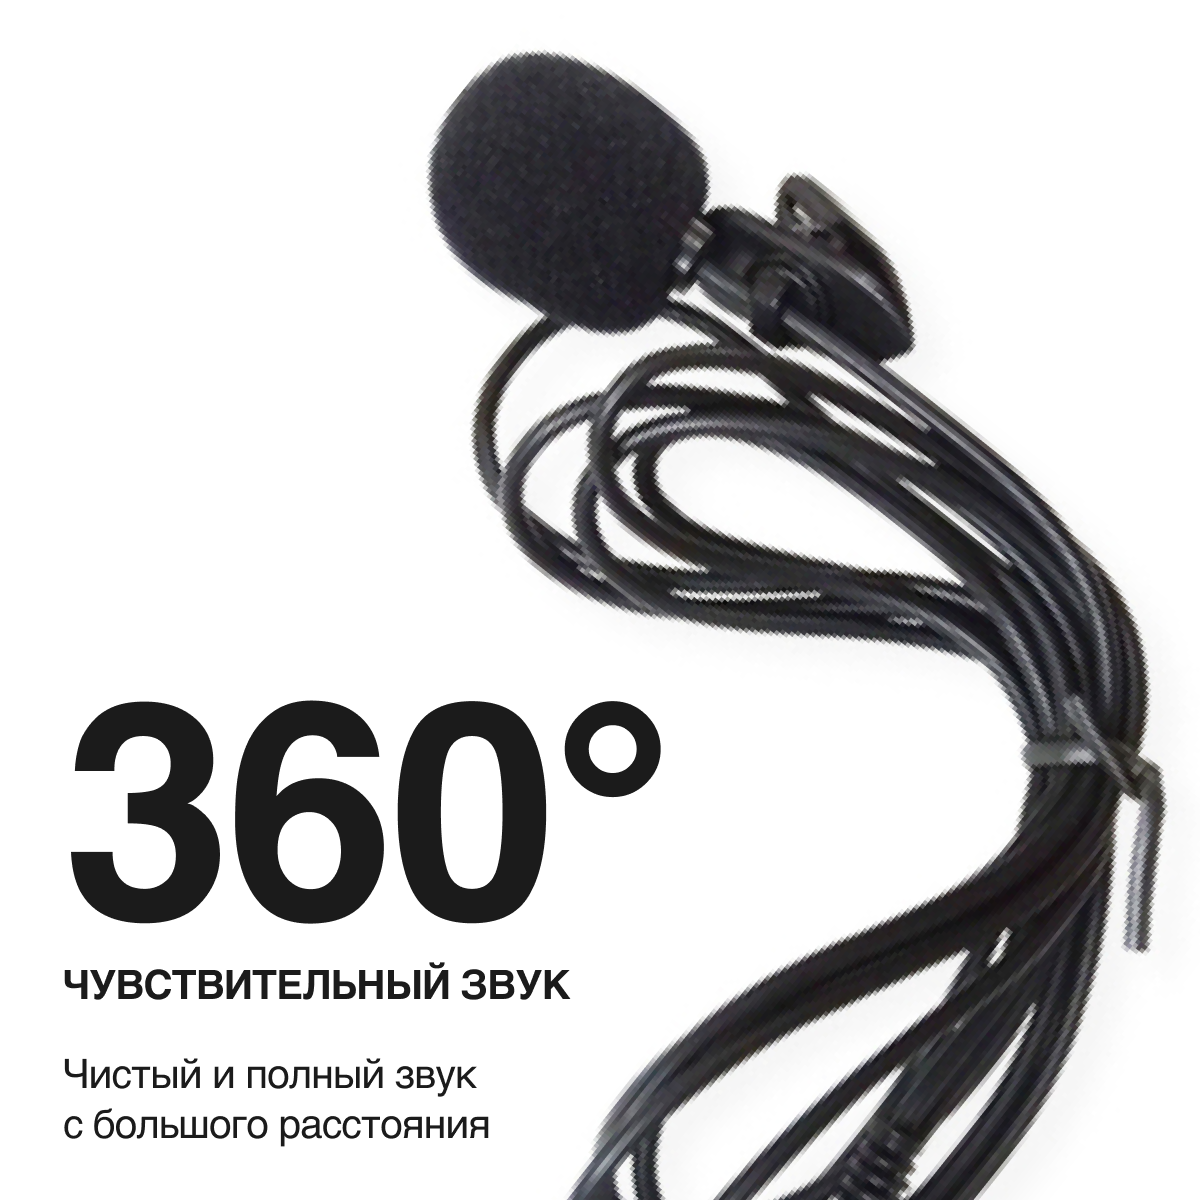 Микрофон петличный с ветрозащитой 3.5 мм для диктофона, камеры, iPhone, Android и компьютера